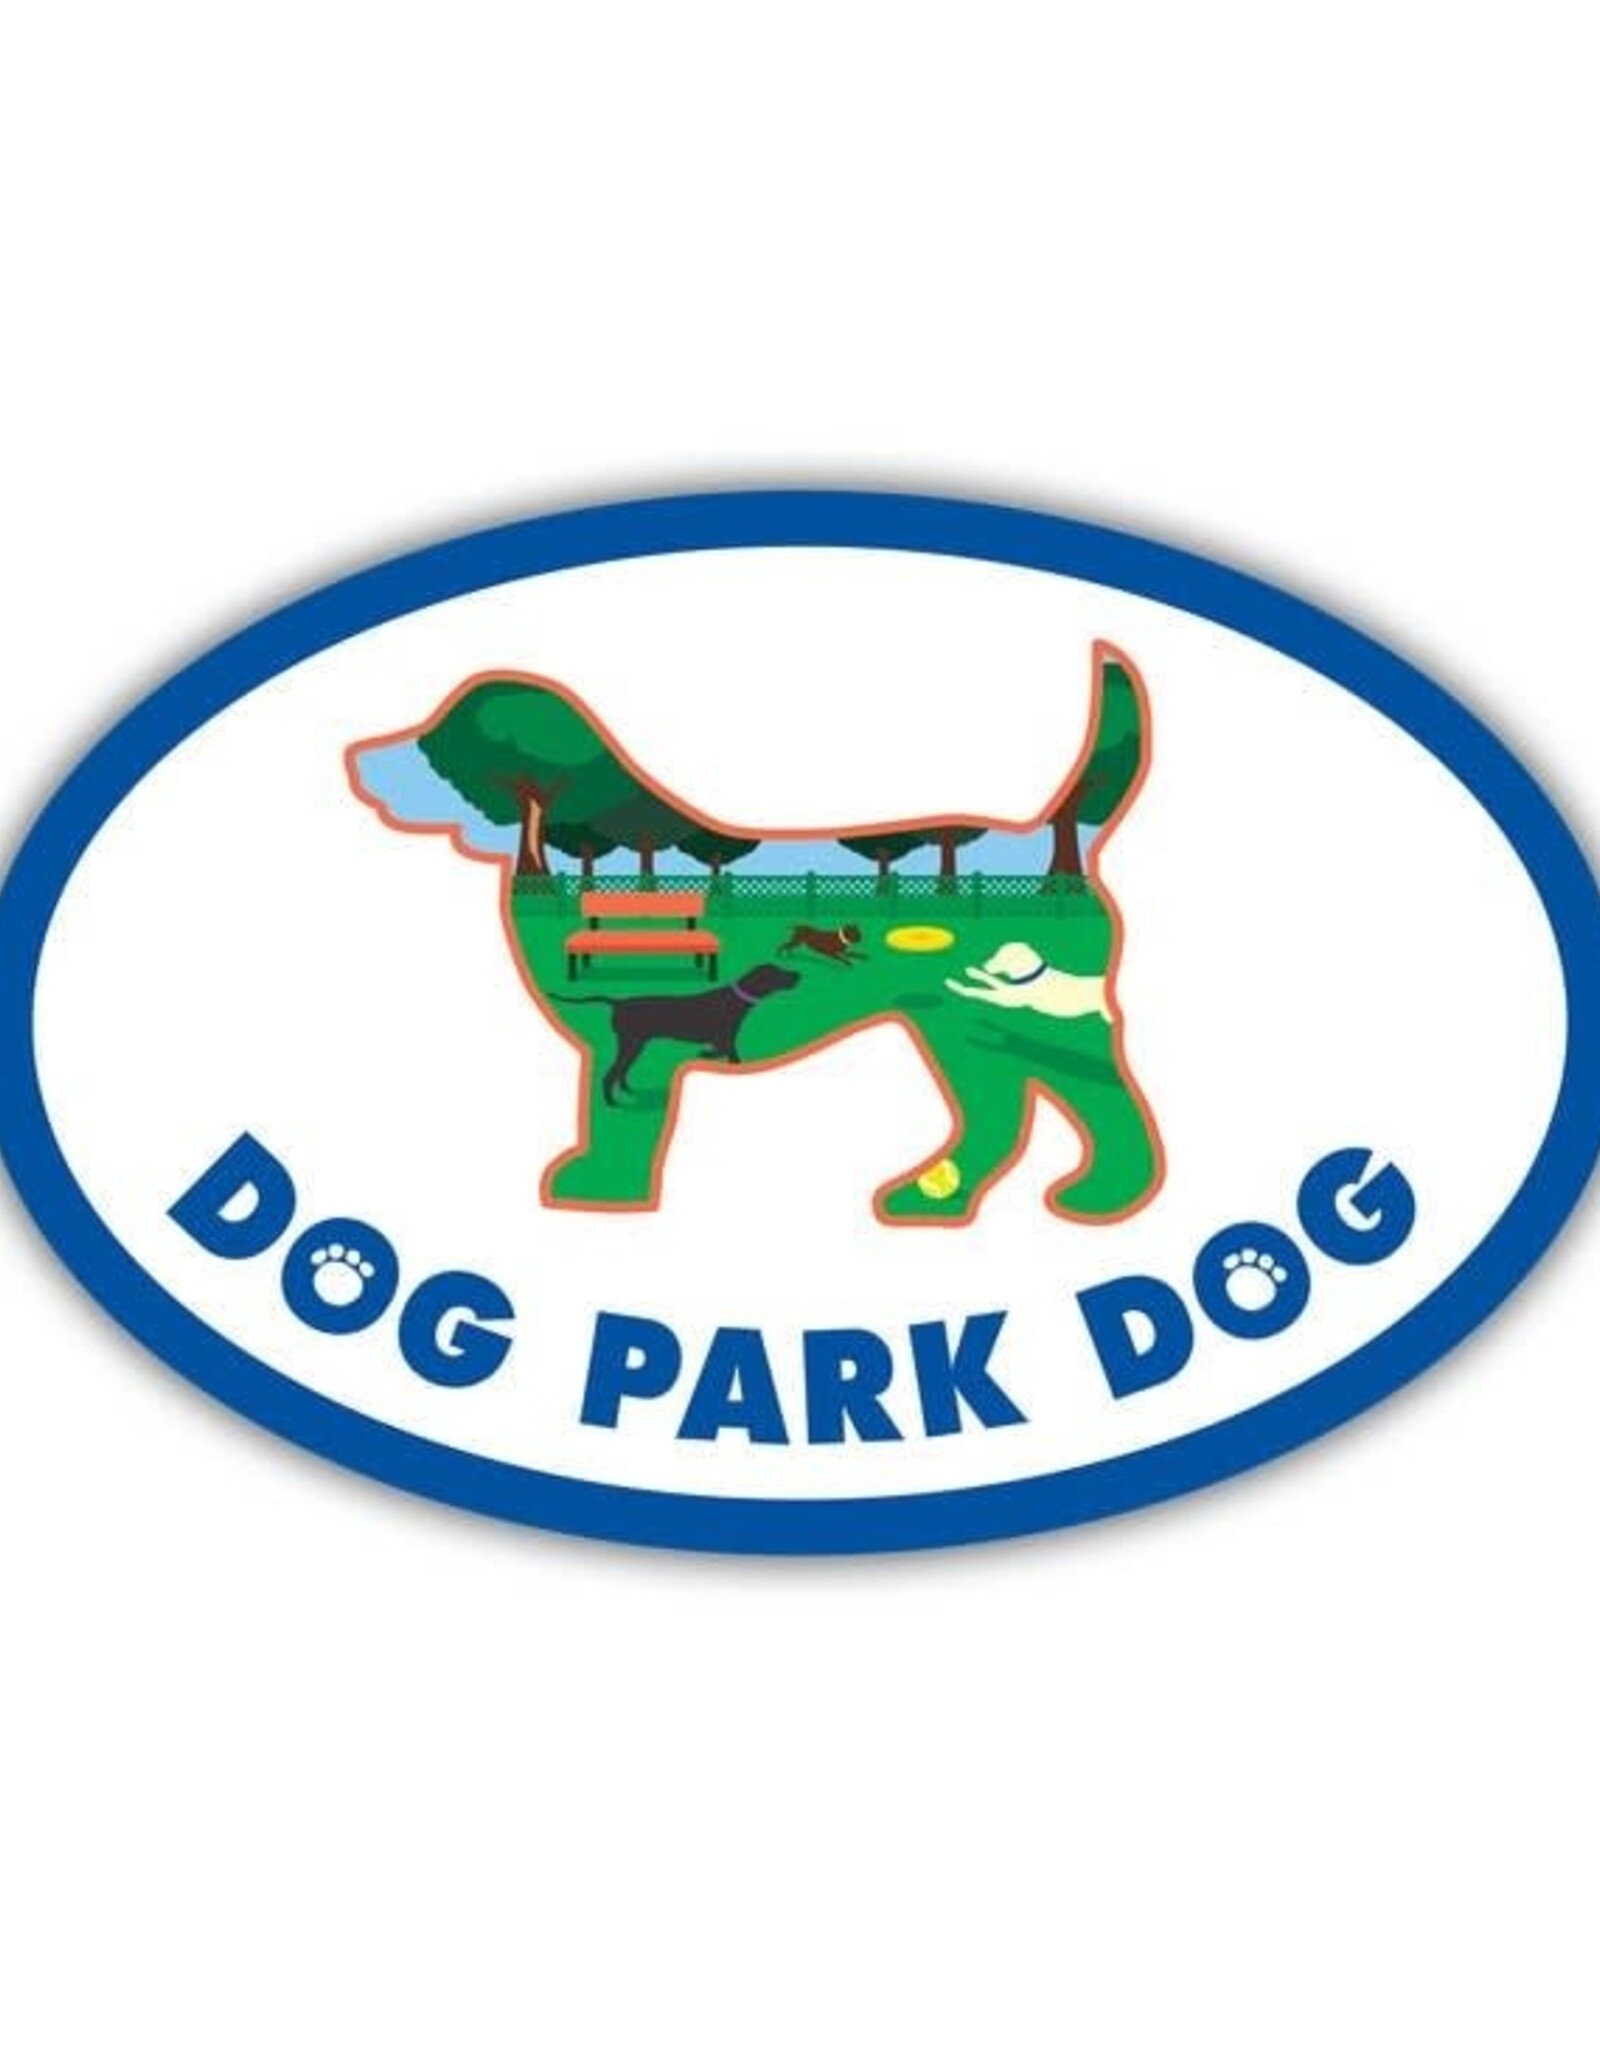 Dog Speak Car Magnet: Dog Park Dog